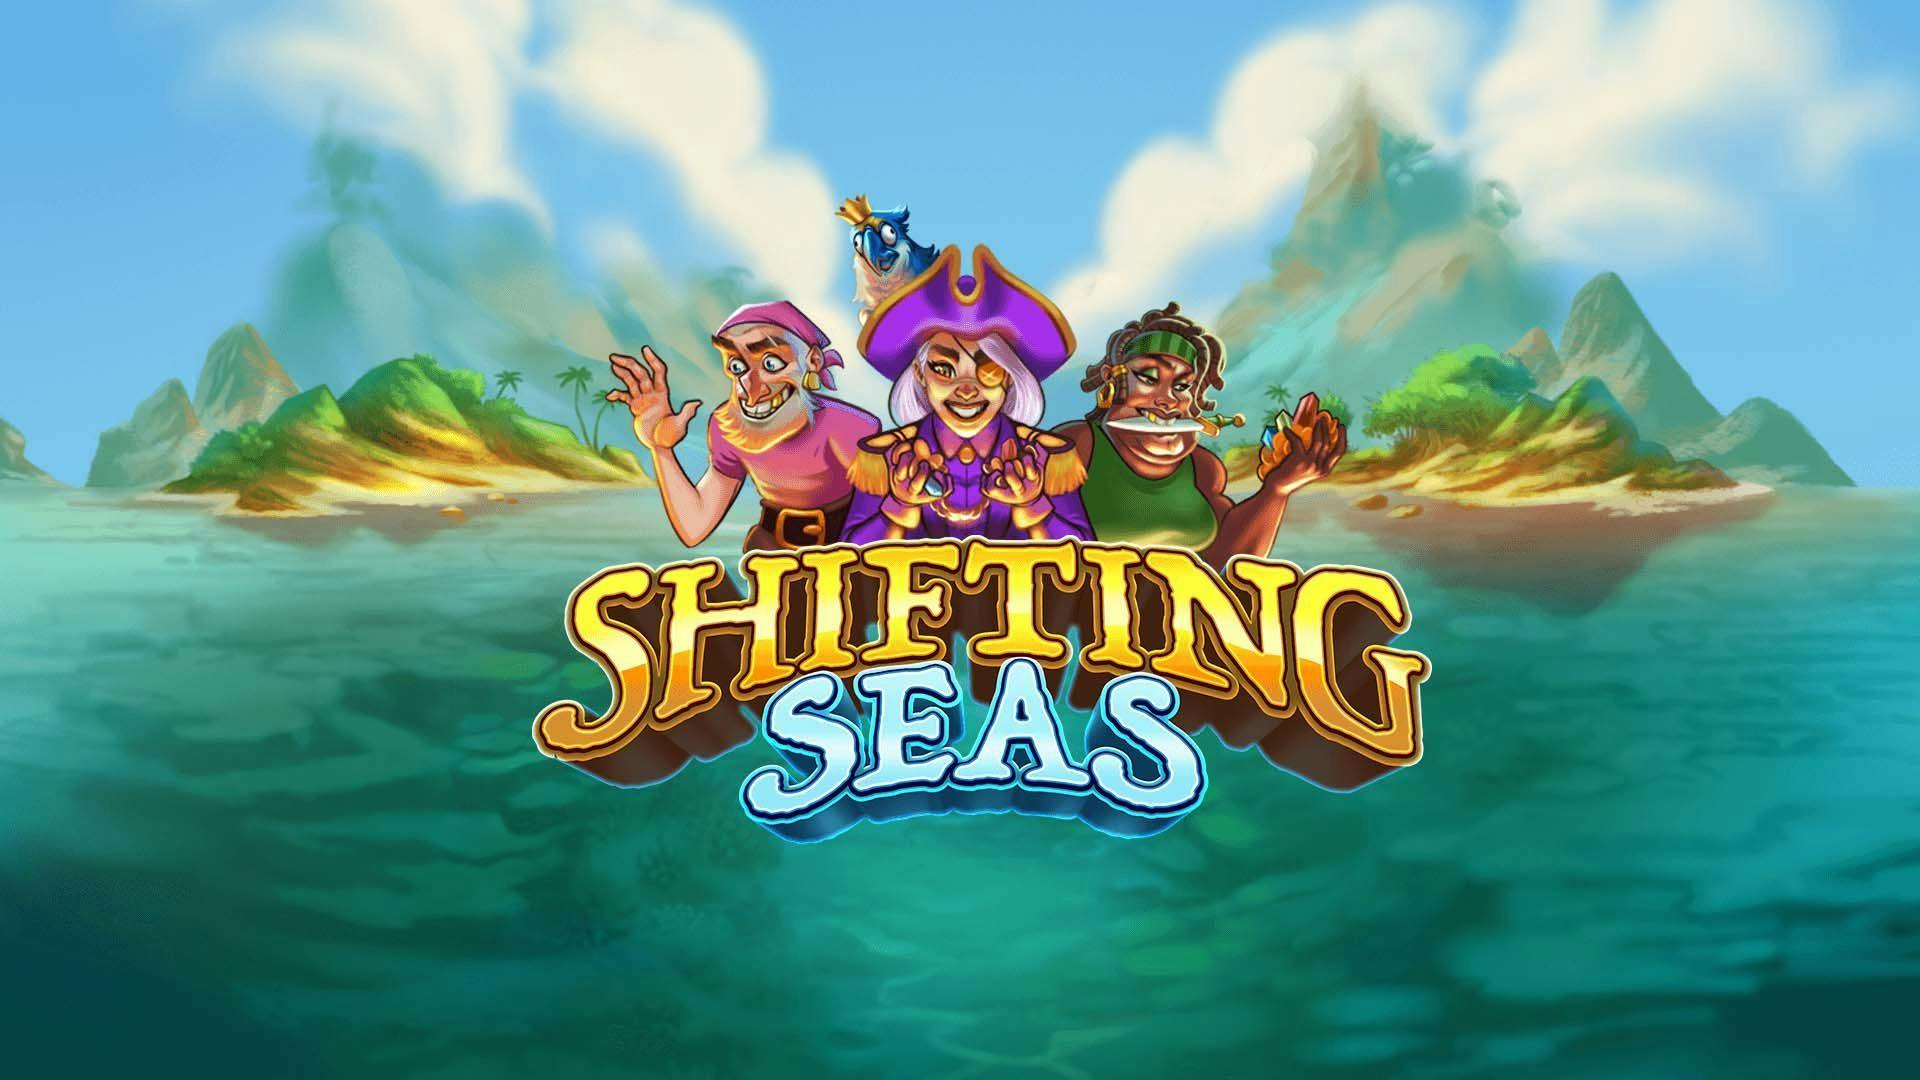 Shifting Seas Slot Machine Online Free Game Play